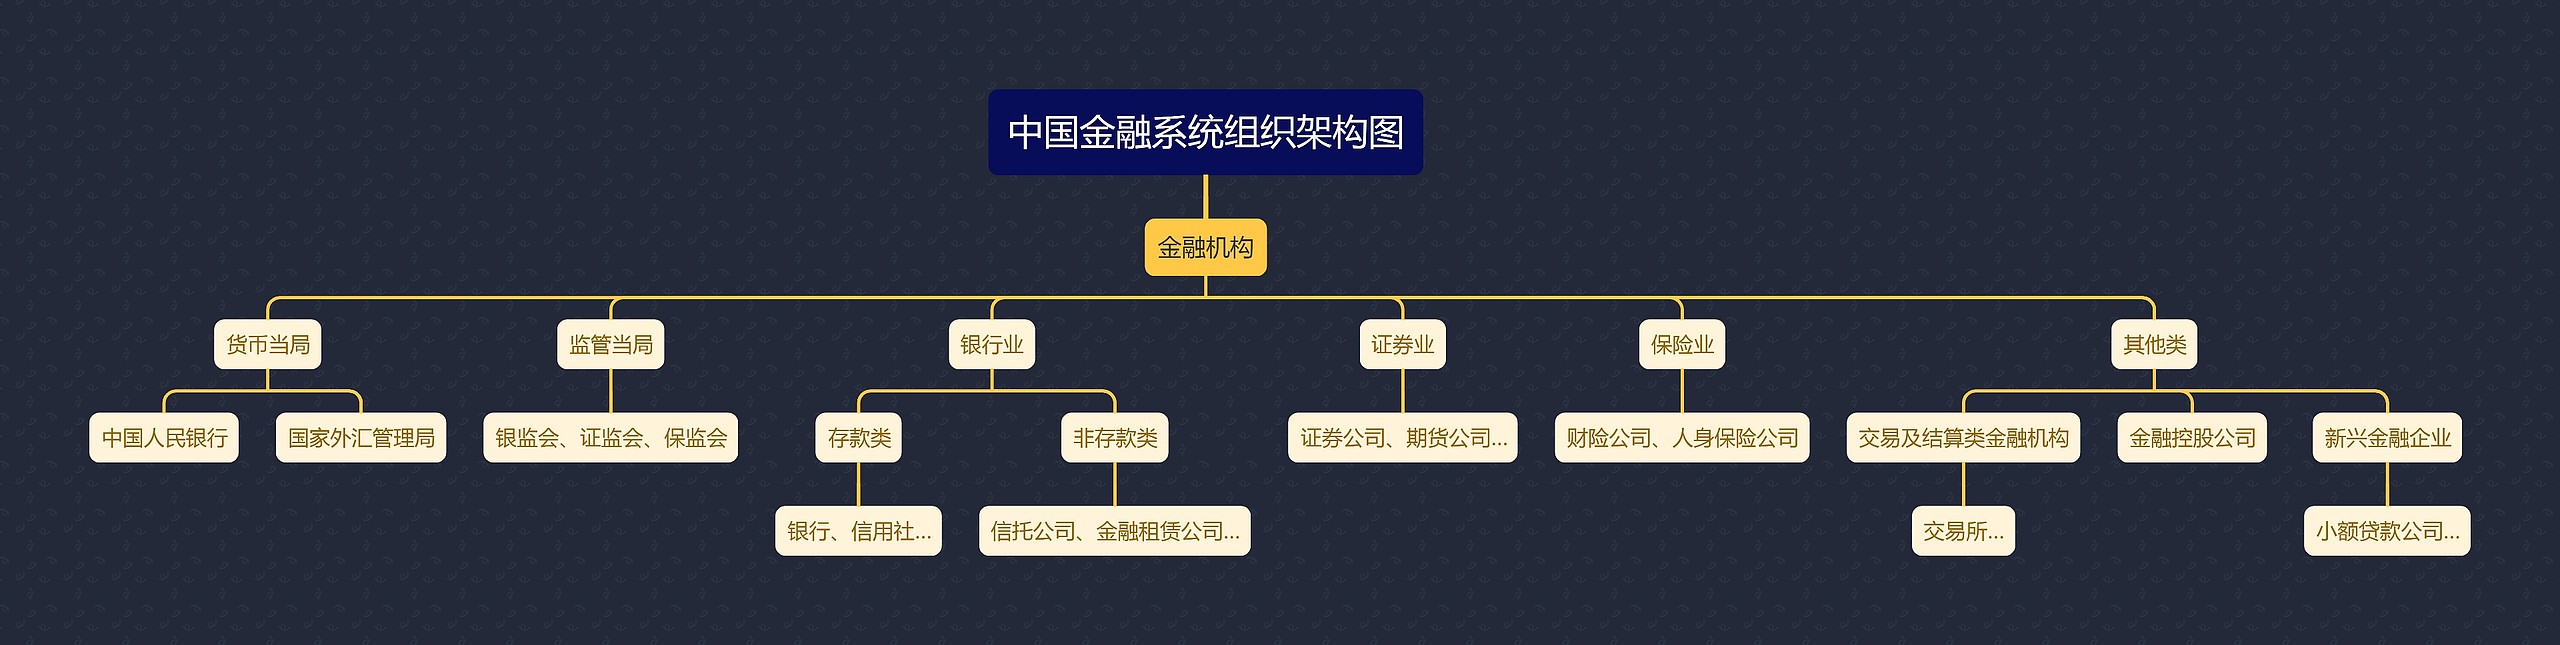 中国金融系统组织架构图思维导图